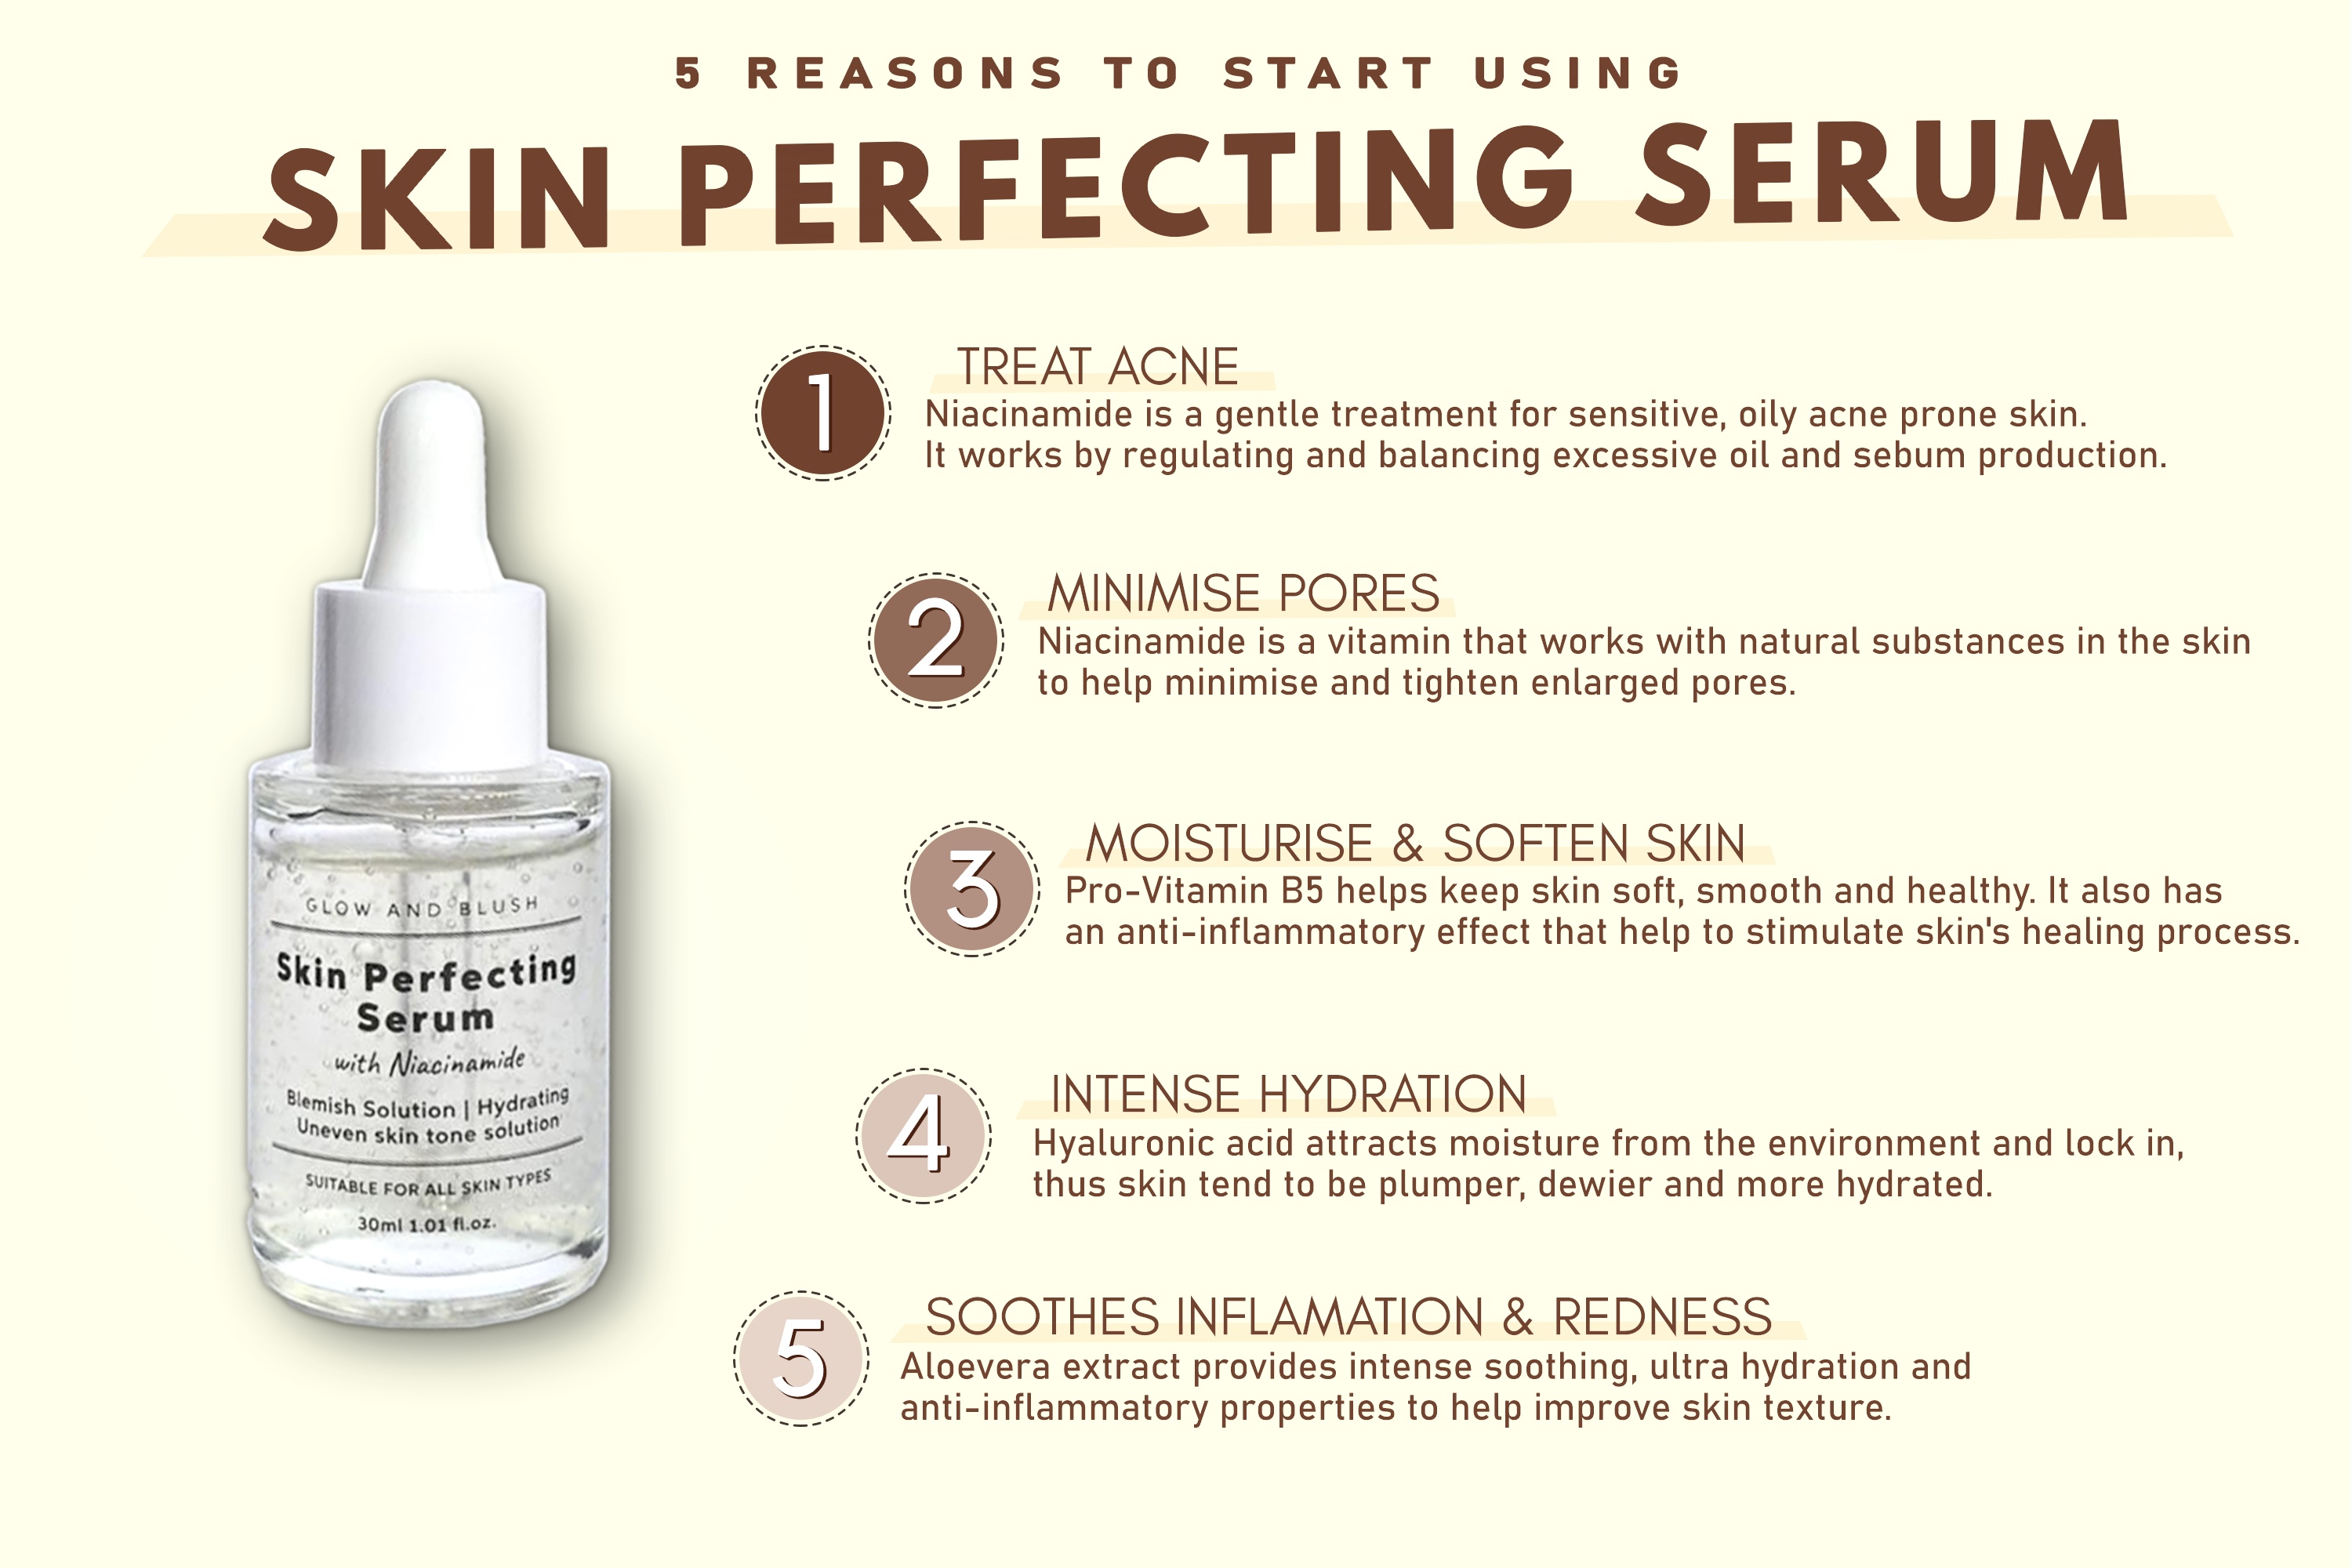 Skin Perfecting Serum – GLOW AND BLUSH